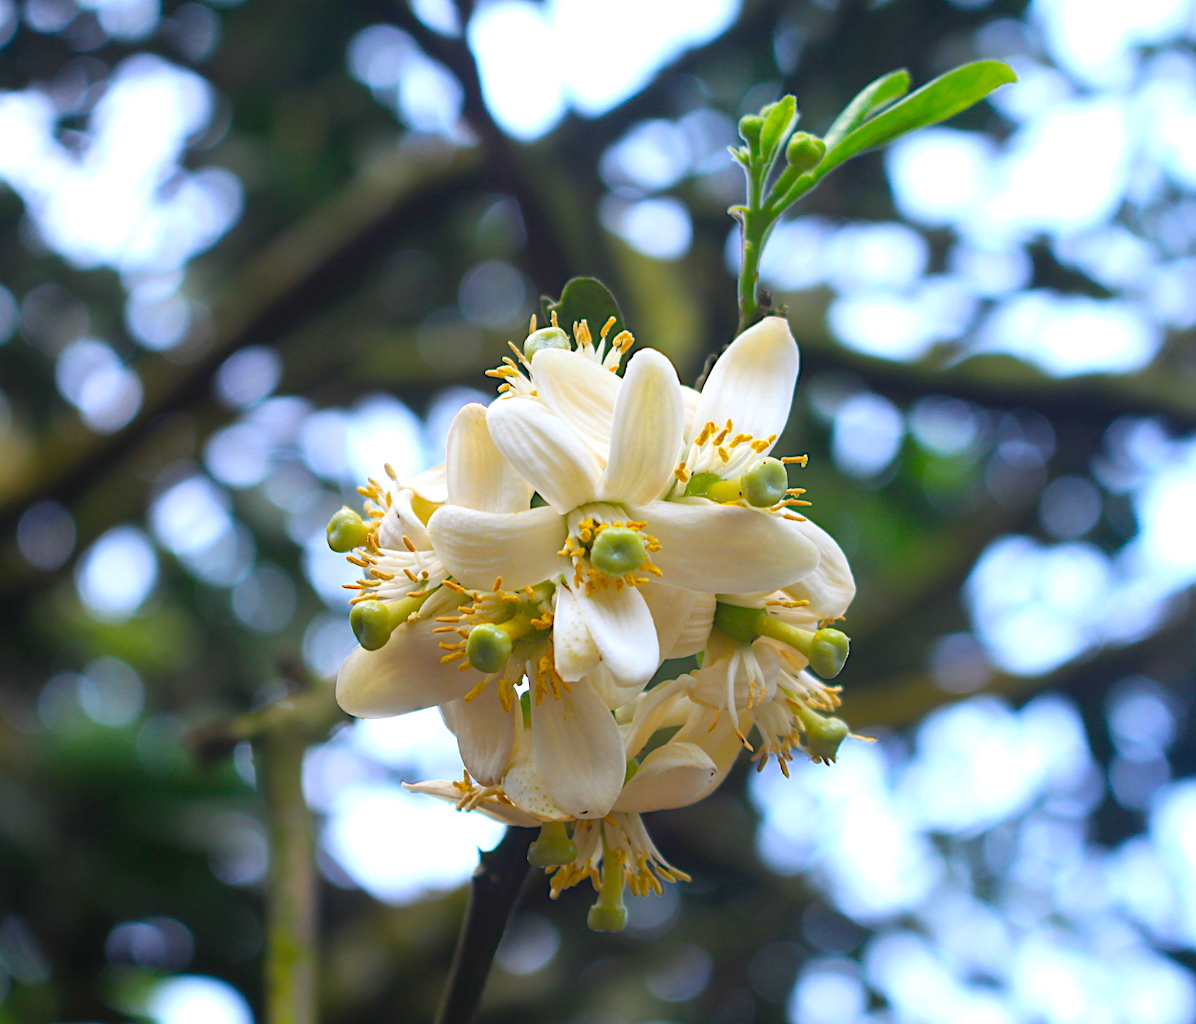 Tổng hợp những hình ảnh đẹp nhất về mùi hoa bưởi tháng ba - [Kích thước hình ảnh: 1196x1024 px]